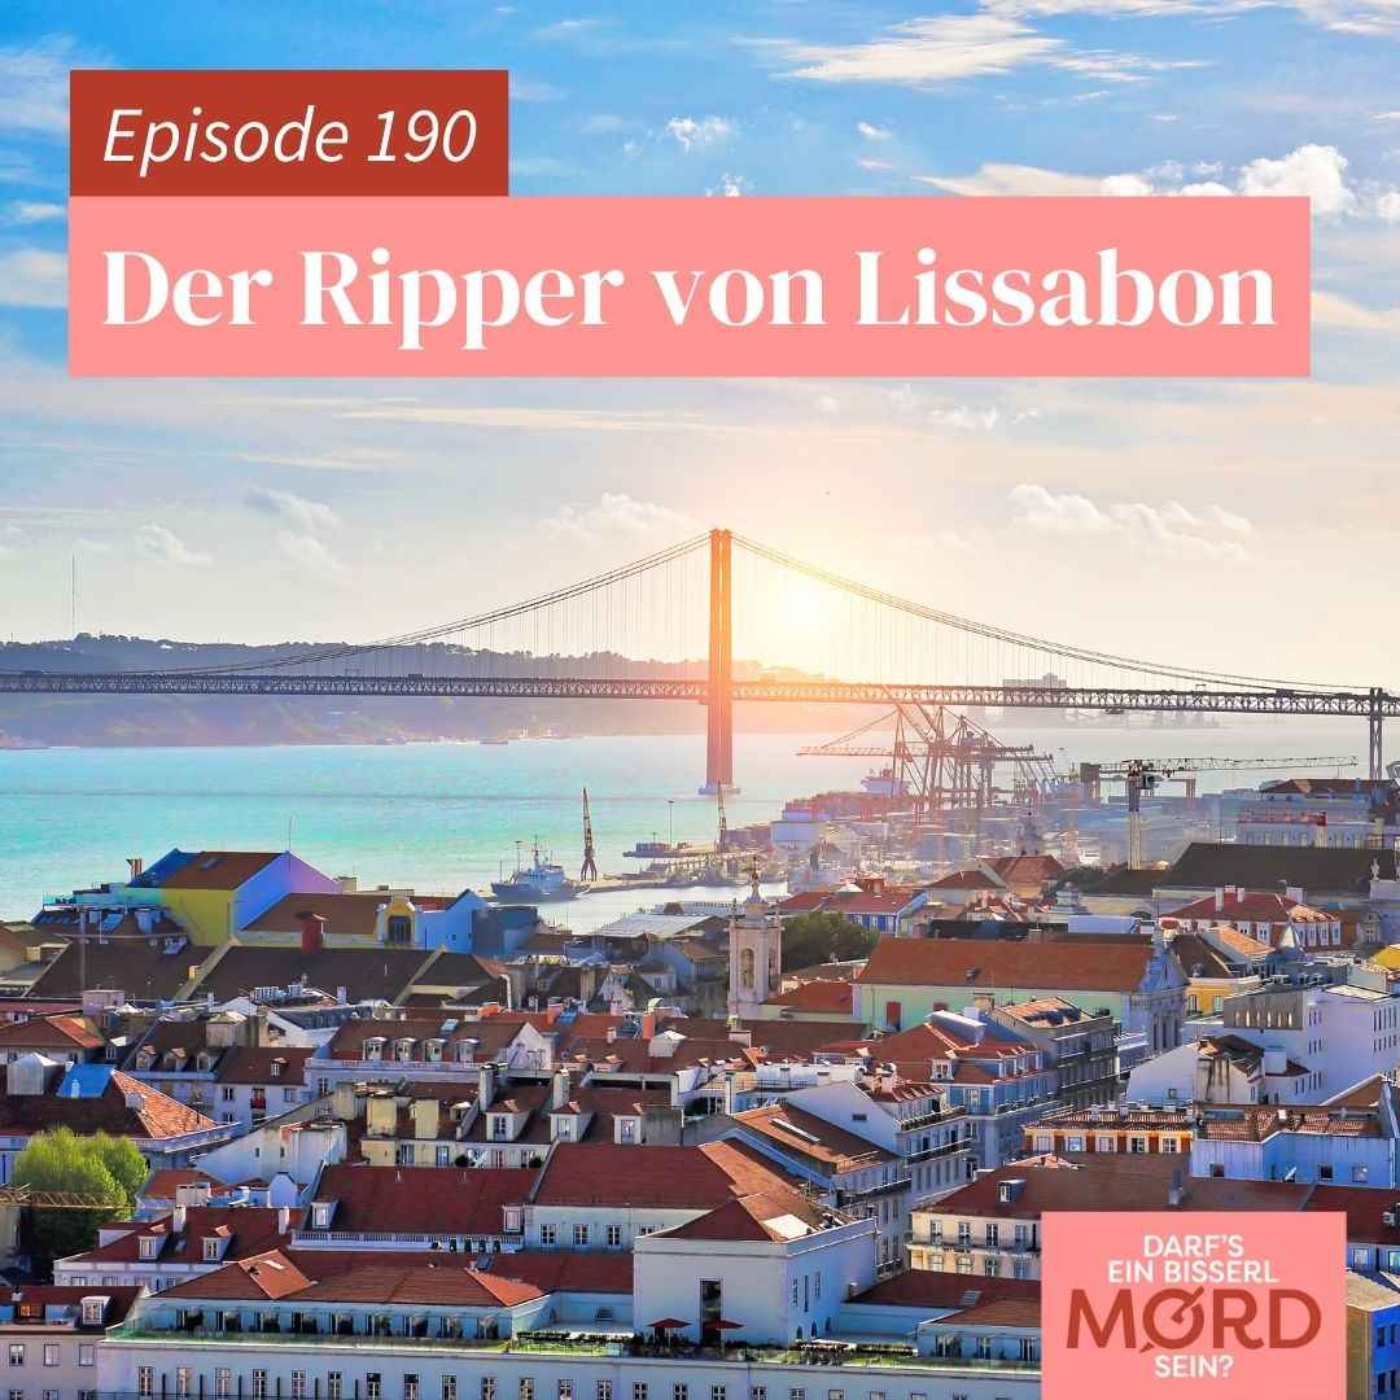 Episode 190: Der Ripper von Lissabon